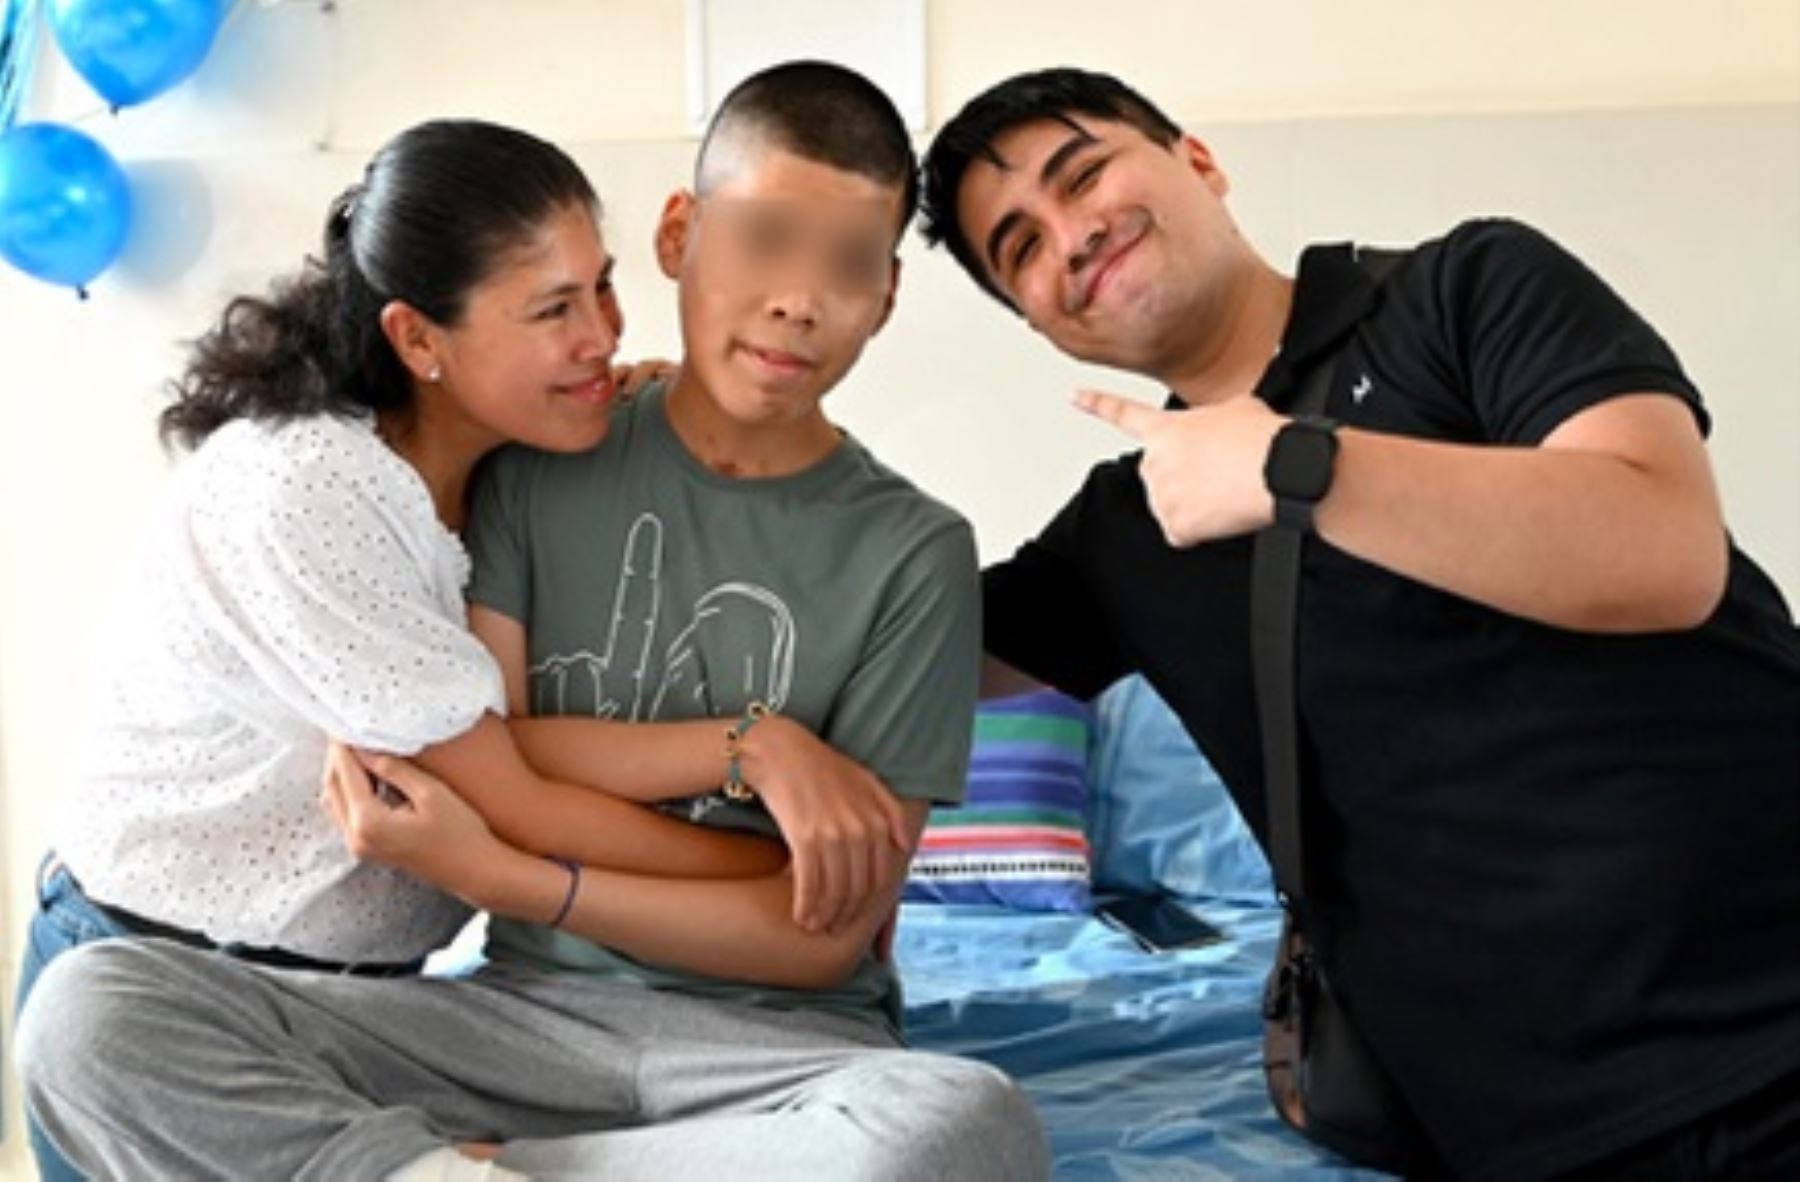 El adolescente Cedrik de 15 años, fue diagnosticado con ameloblastoma plexiforme, un tumor benigno de rápido crecimiento que afectó su mandíbula derecha. Foto: Cortesía